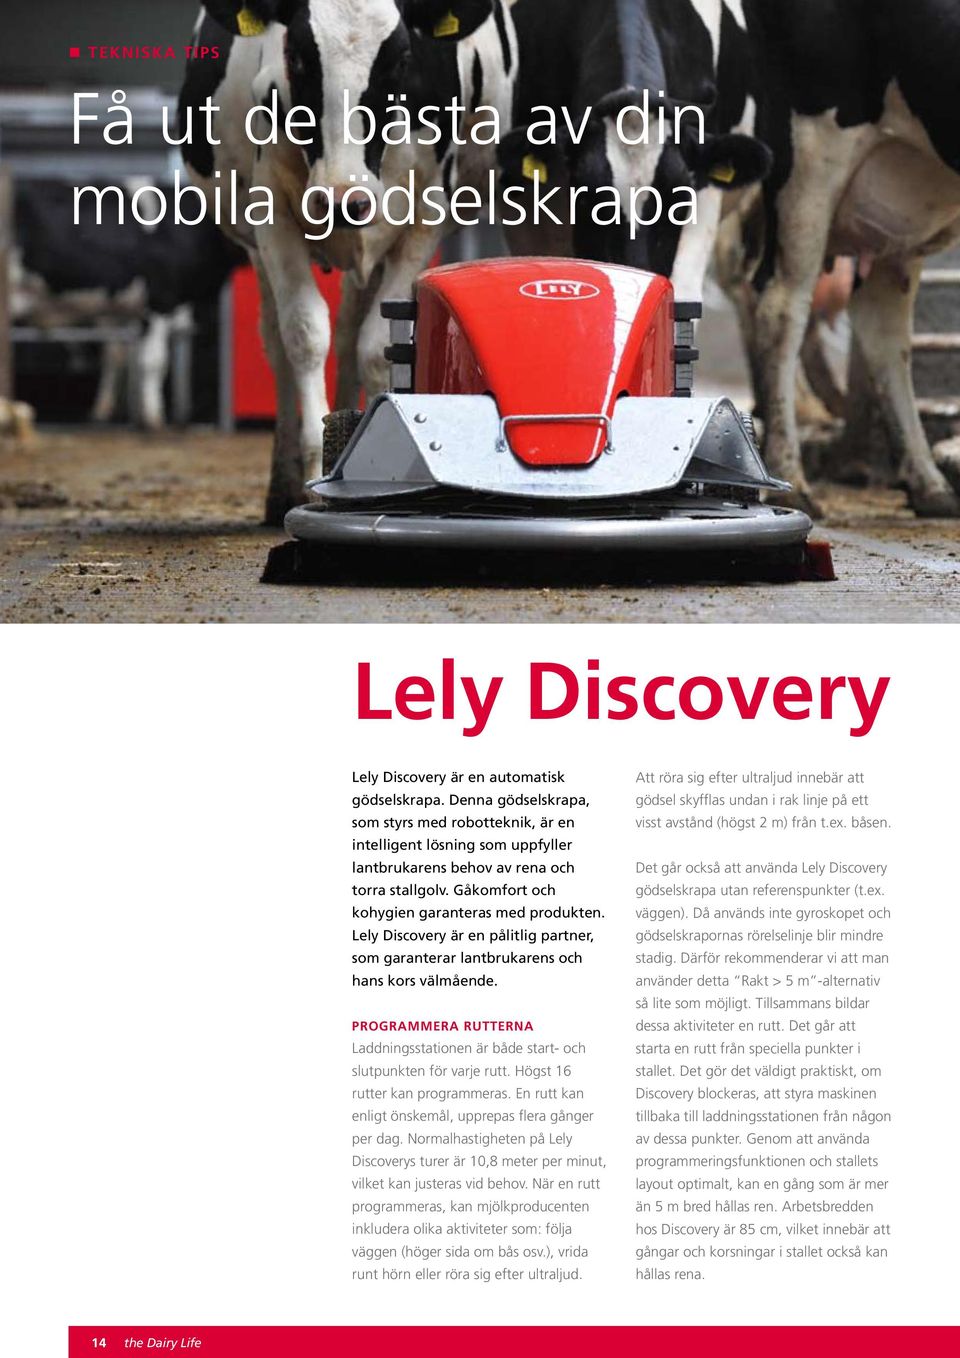 Lely Discovery är en pålitlig partner, som garanterar lantbrukarens och hans kors välmående. Programmera rutterna Laddningsstationen är både start- och slutpunkten för varje rutt.